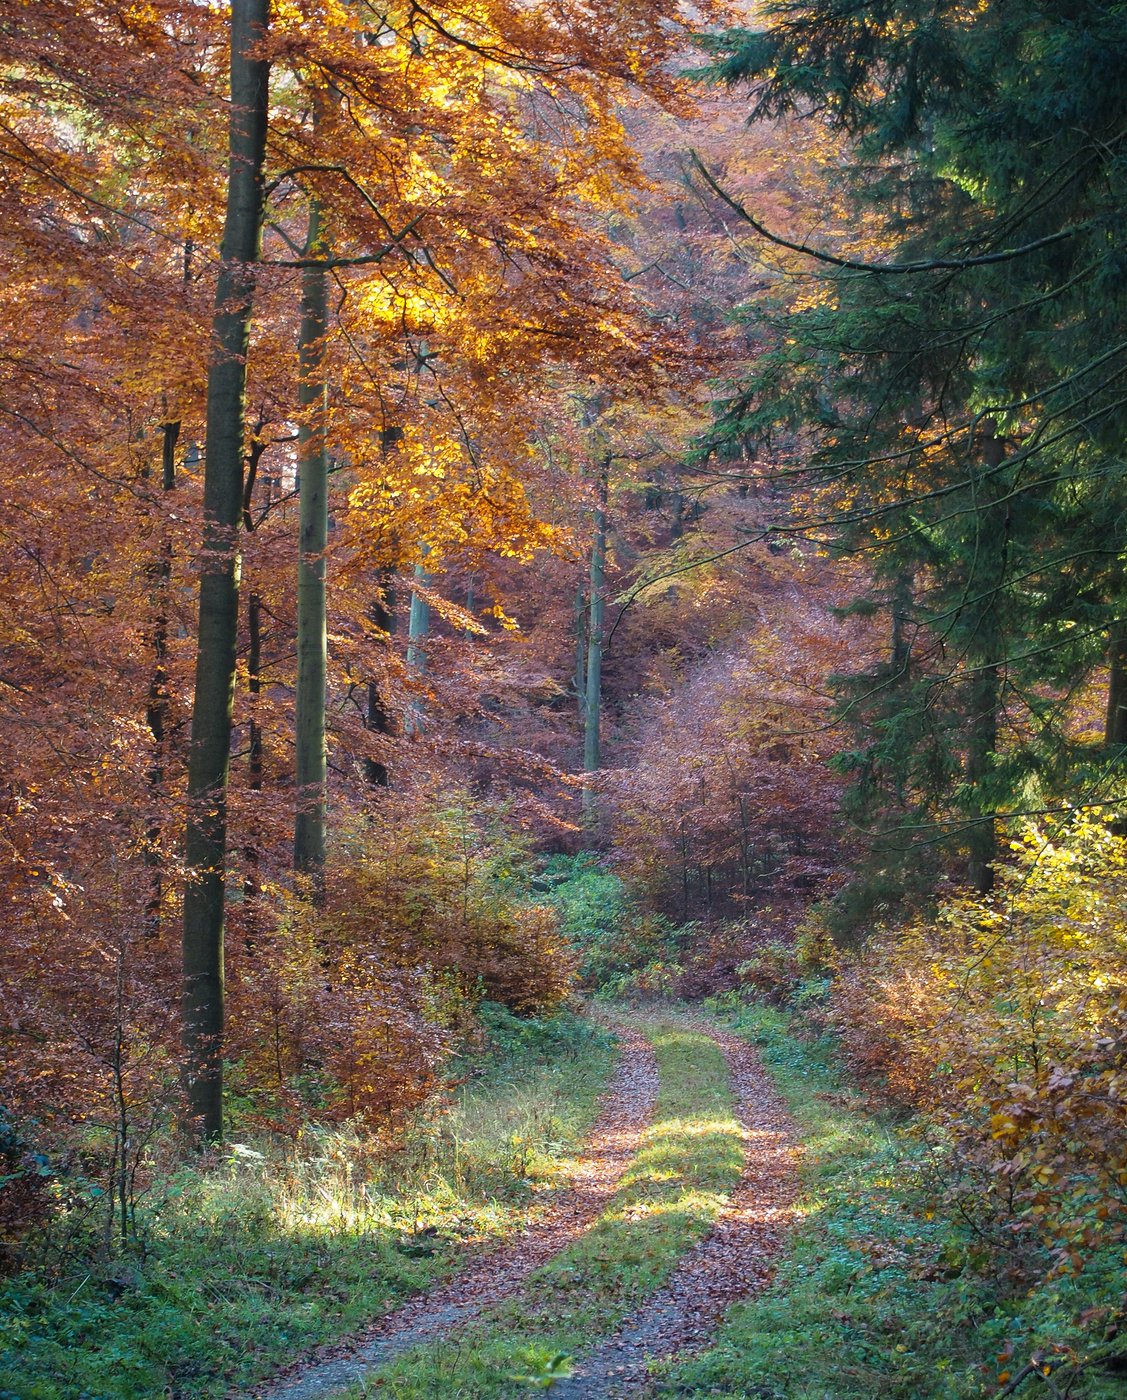 Изм лес. Лес в ноябре. Ноябрьский лес. Ноябрь природа. Осенний лес в ноябре.